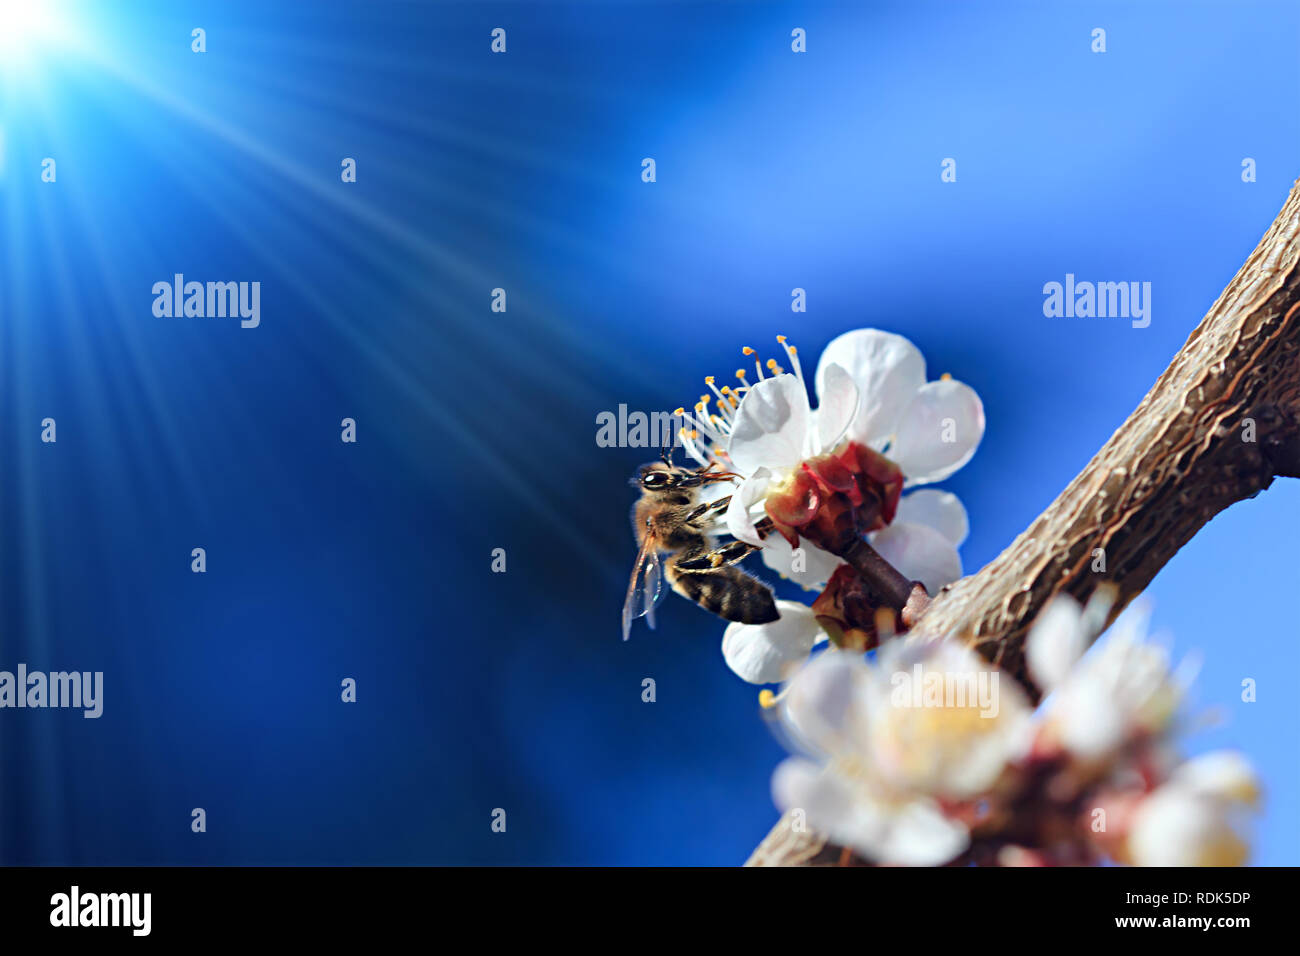 Un nectar d'abeille (pollen) de la fleur blanche d'un arbre en fleurs. Banque D'Images